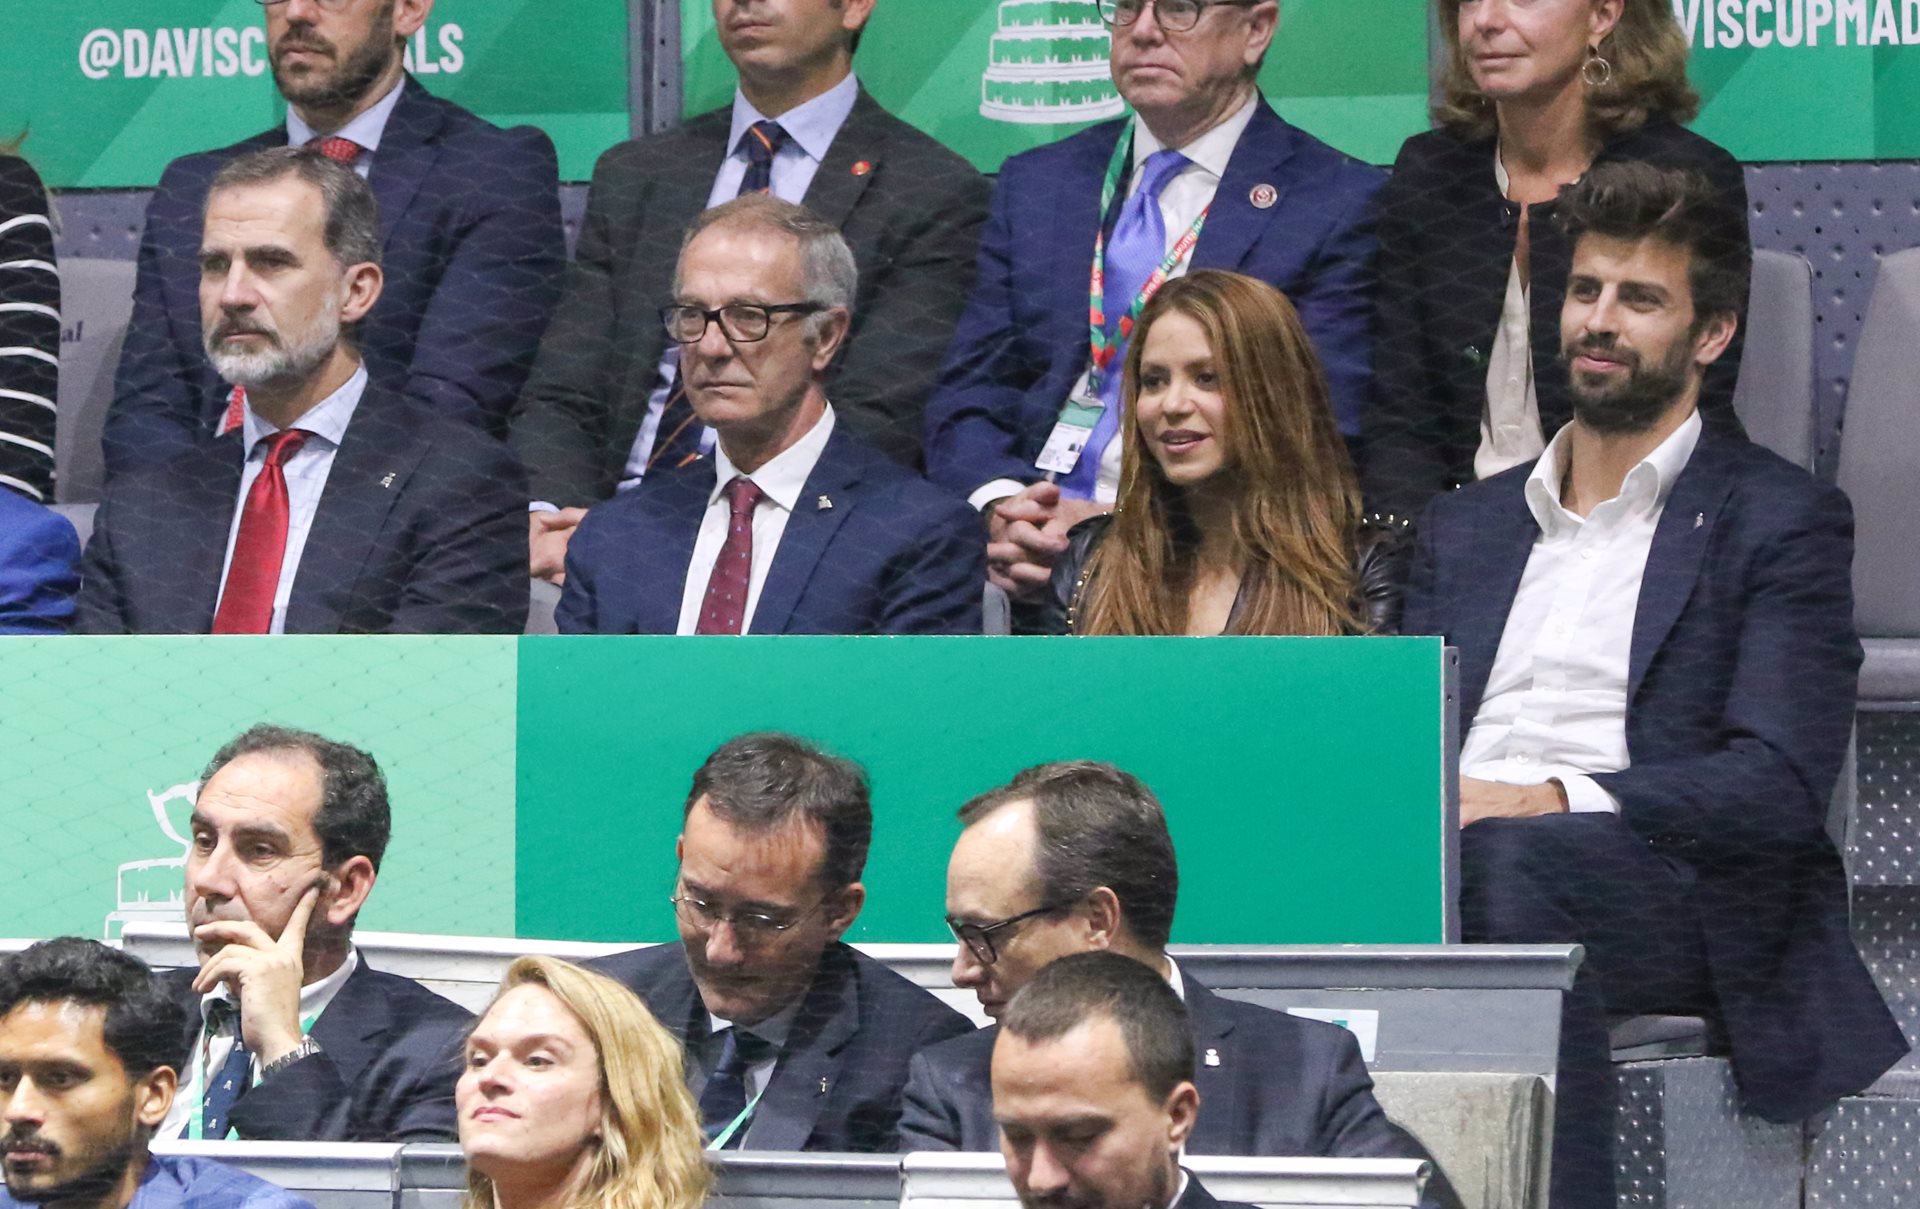 El Rey Felipe VI compartió la final de la Copa Davis con Shakira y Piqué donde compartieron comentarios, emoción y celebración